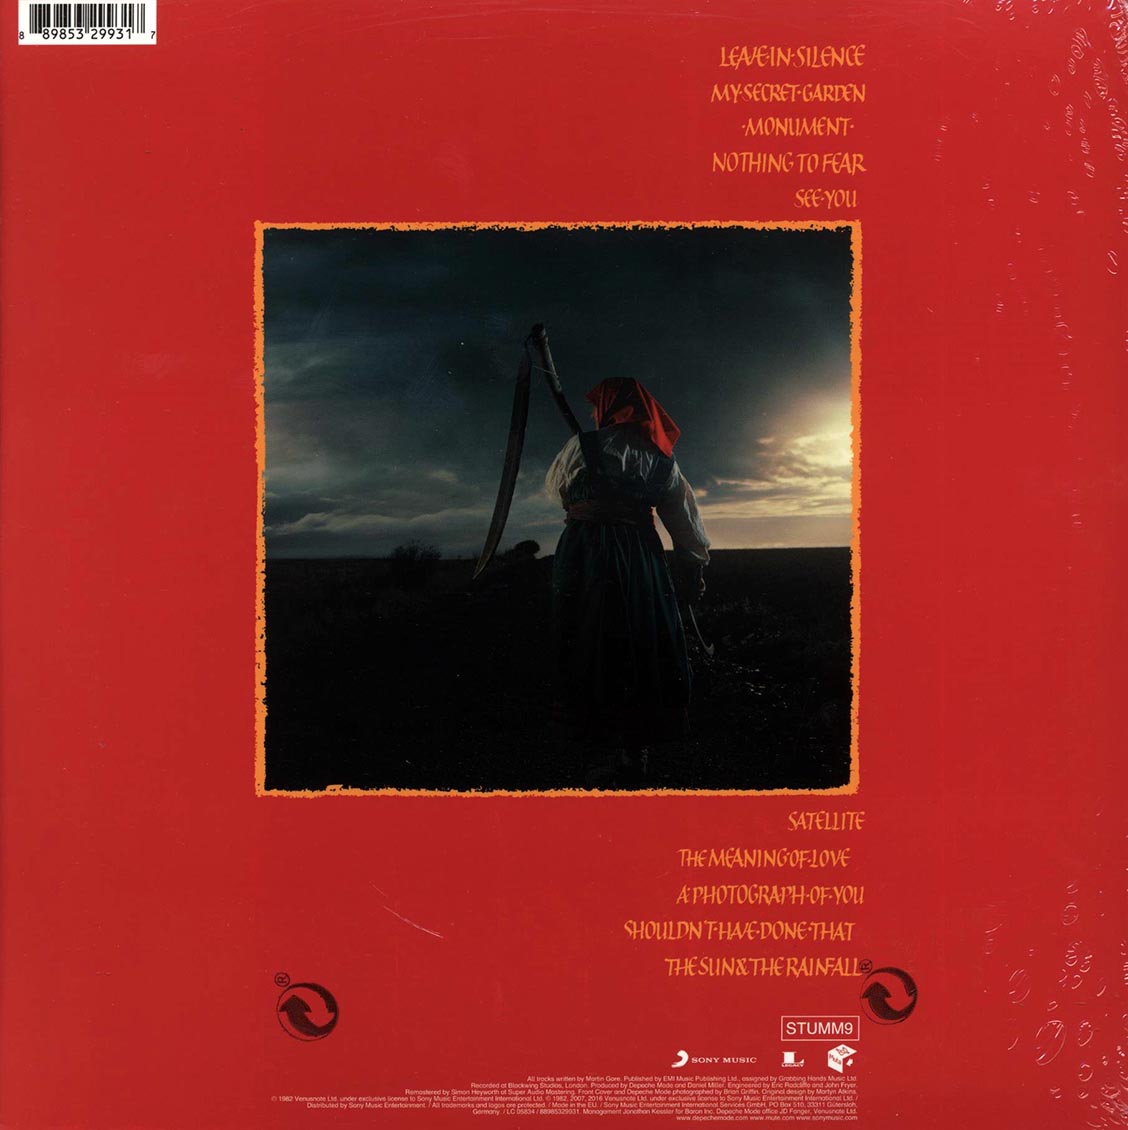 Depeche Mode - A Broken Frame (180g) (remastered) - Vinyl LP, LP